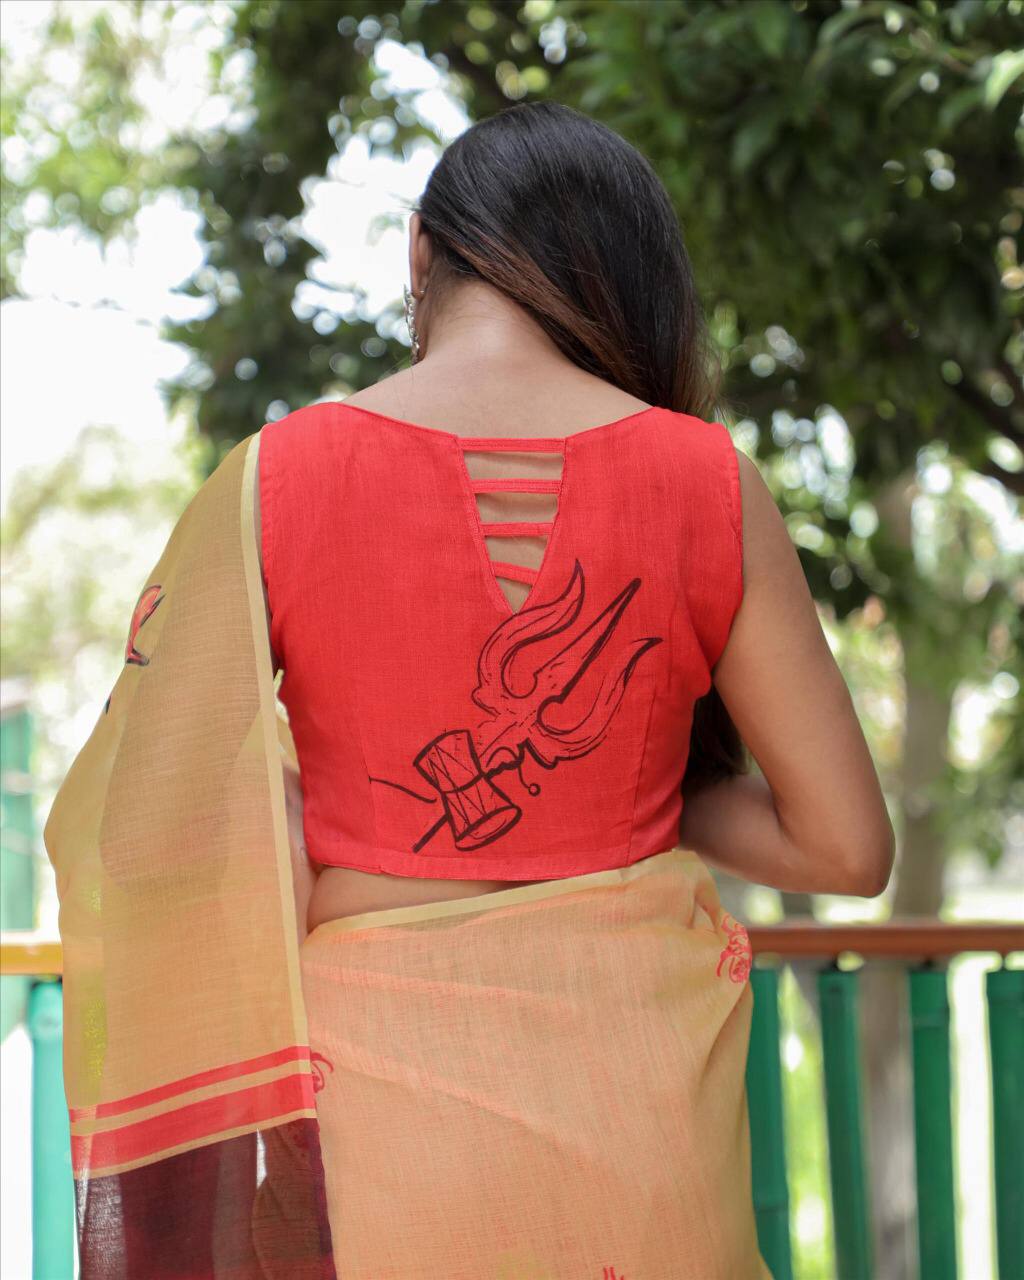 Digital Print in soft linen fabric Pattern saree